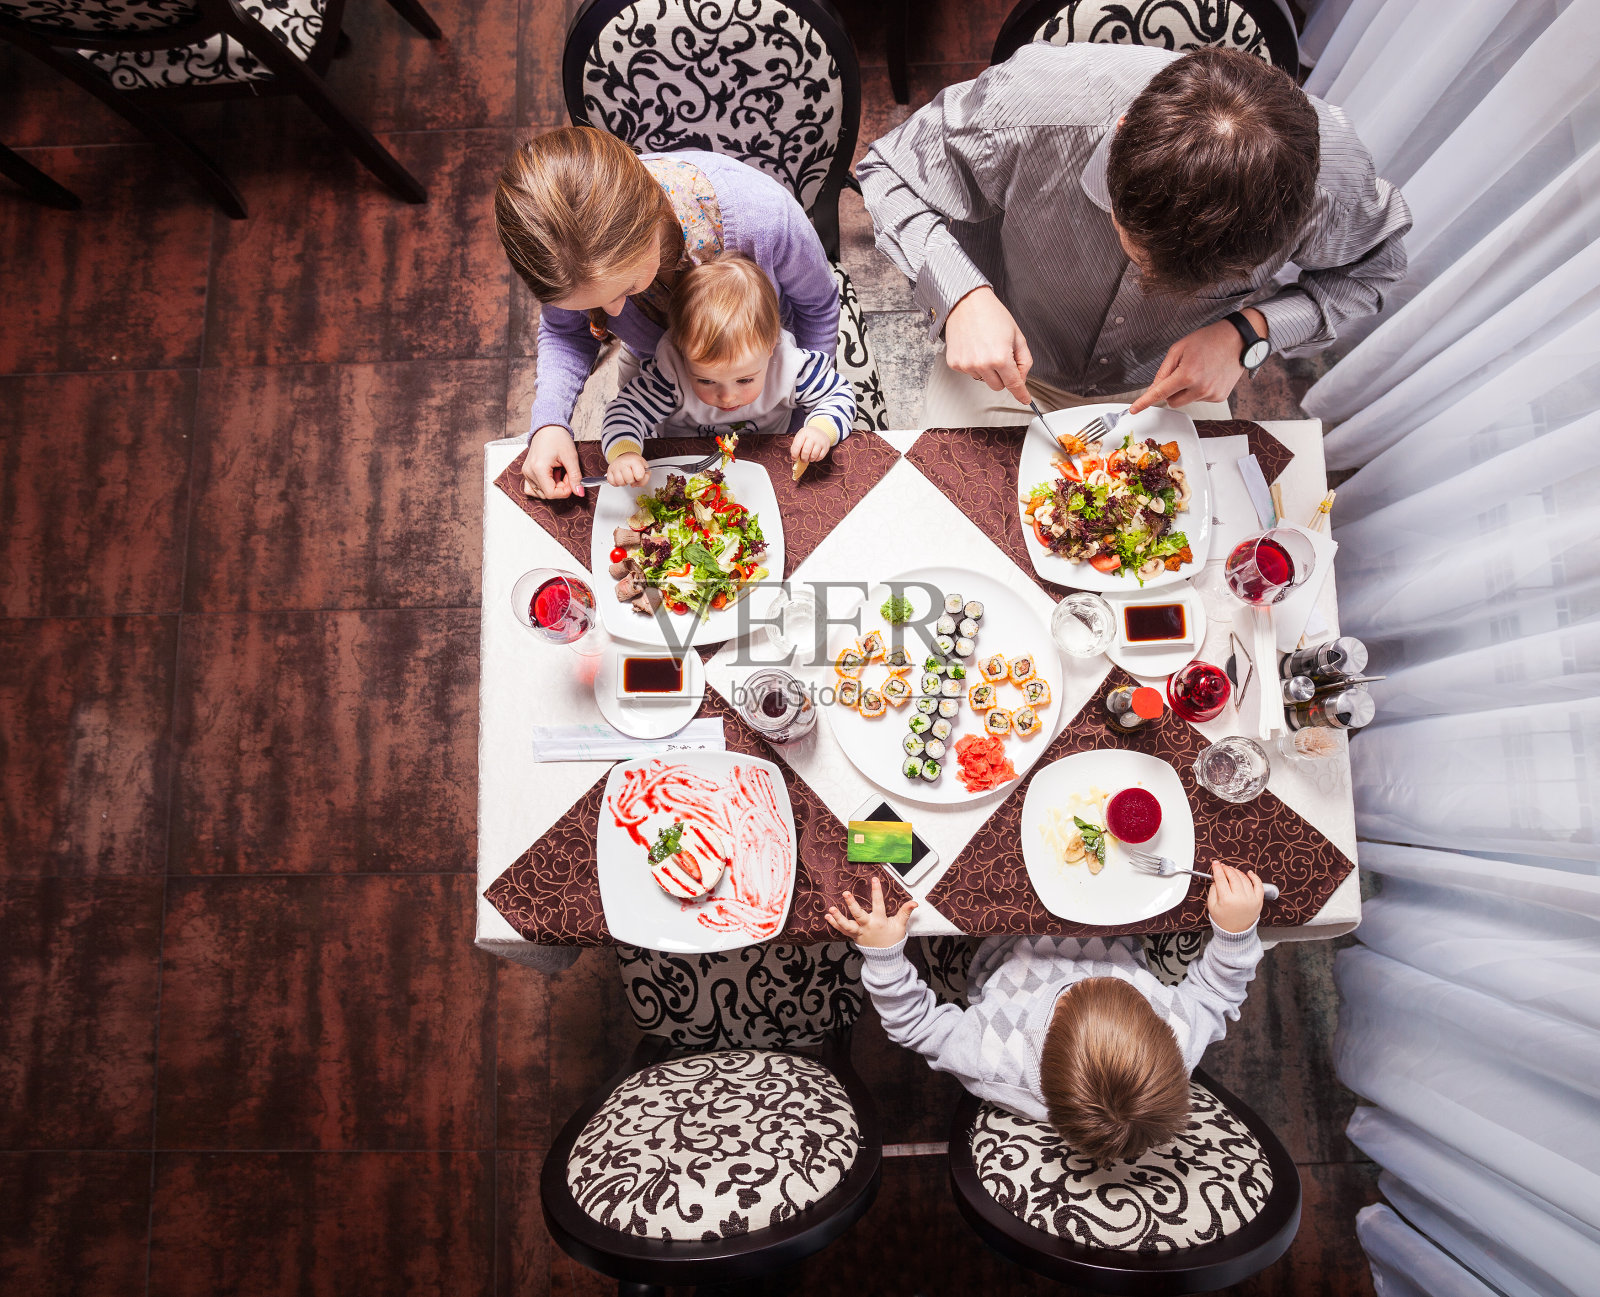 一家四口在餐馆吃饭照片摄影图片